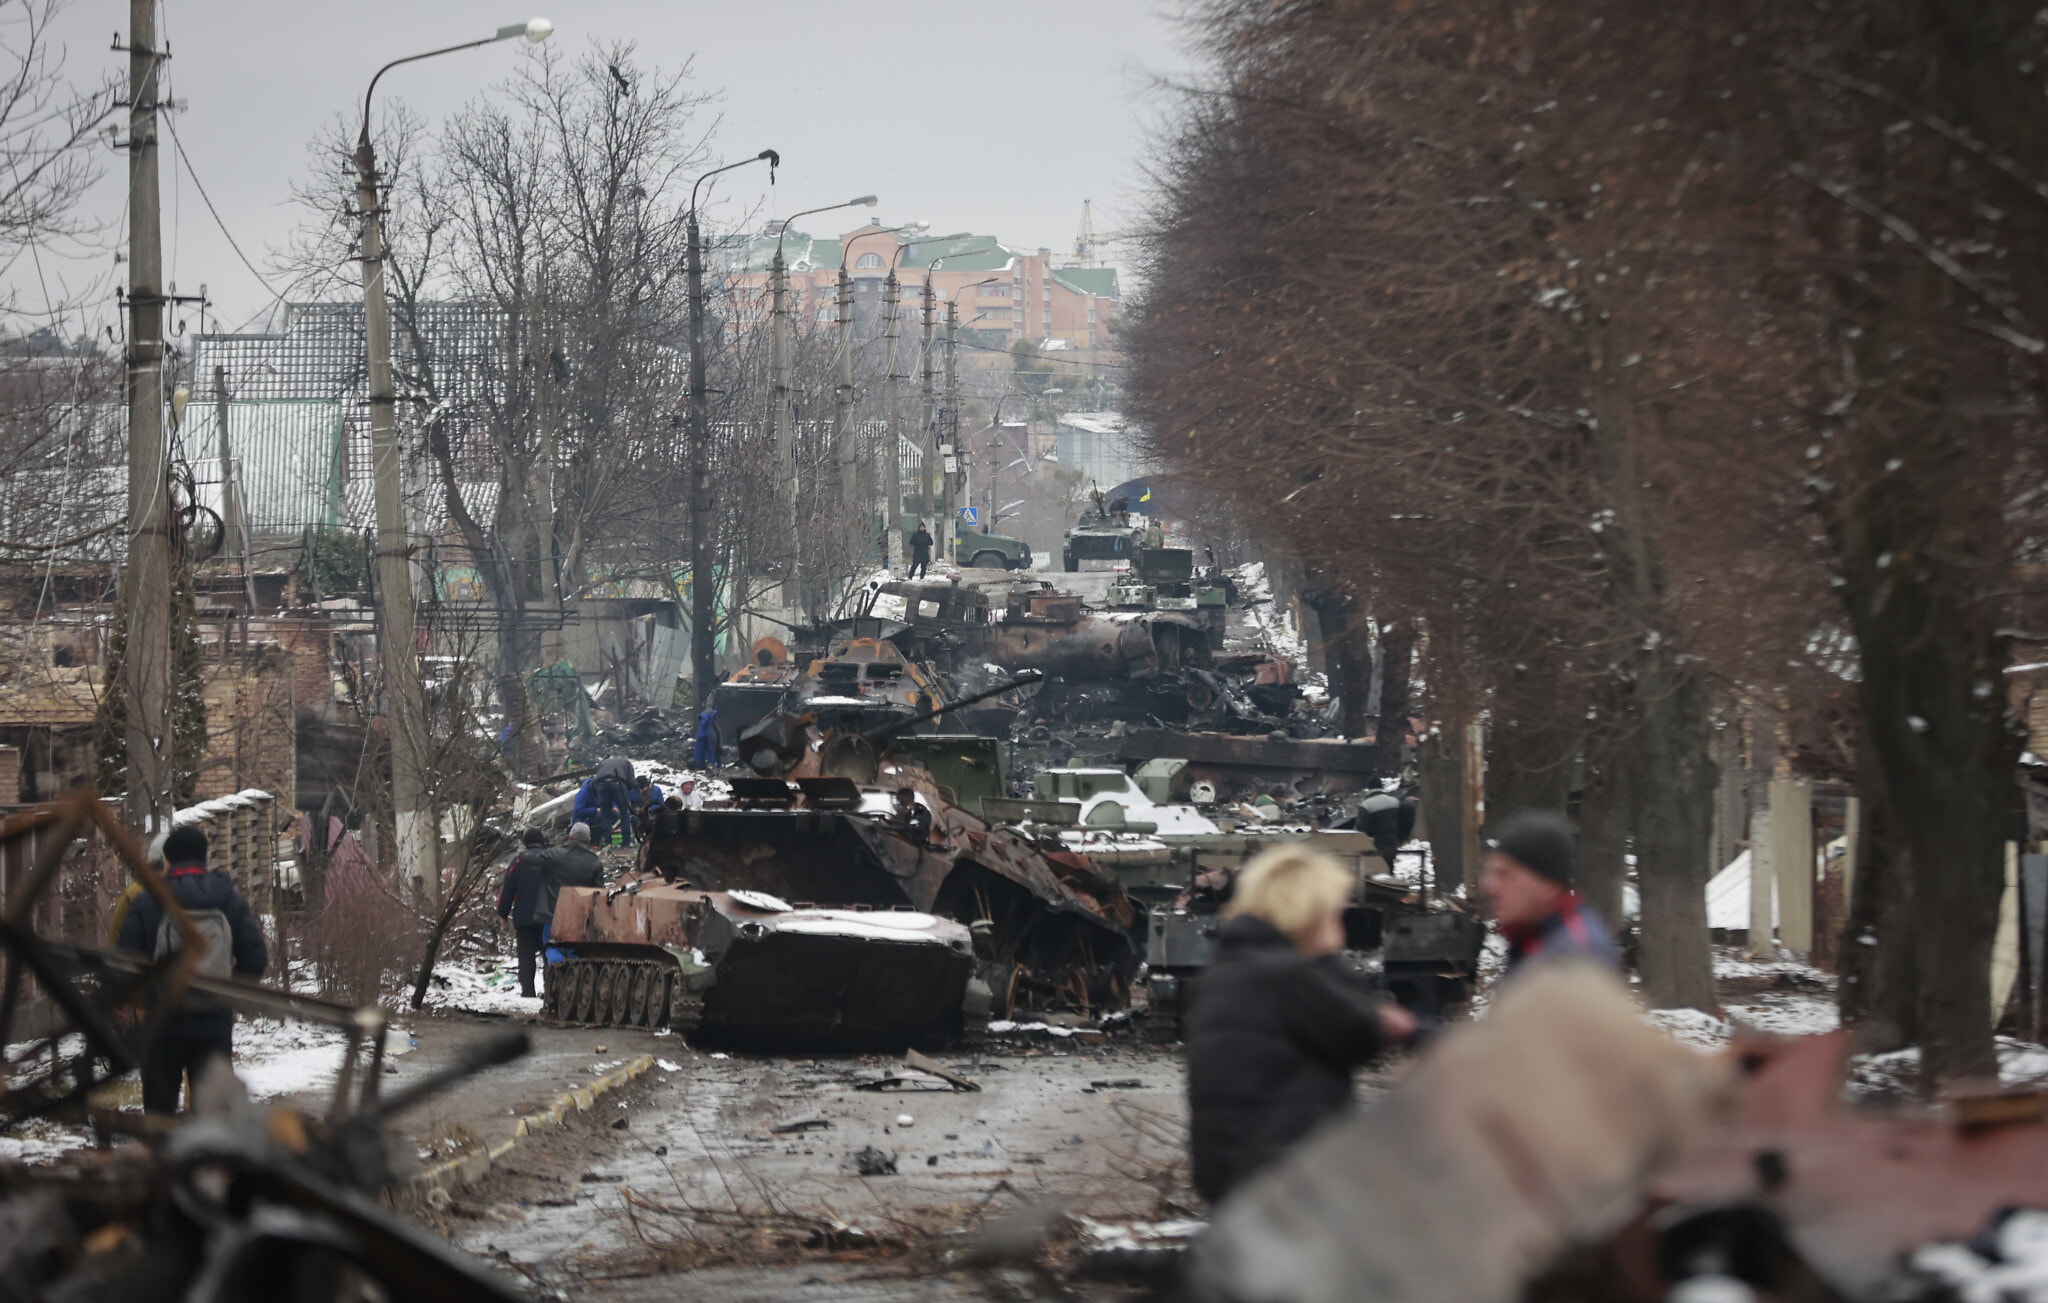 Ilustrativo: Personas observan los restos destruidos de vehículos militares rusos en una carretera de la ciudad de Bucha, cerca de la capital Kiev, Ucrania, el martes 1 de marzo de 2022. (AP/Serhii Nuzhnenko)